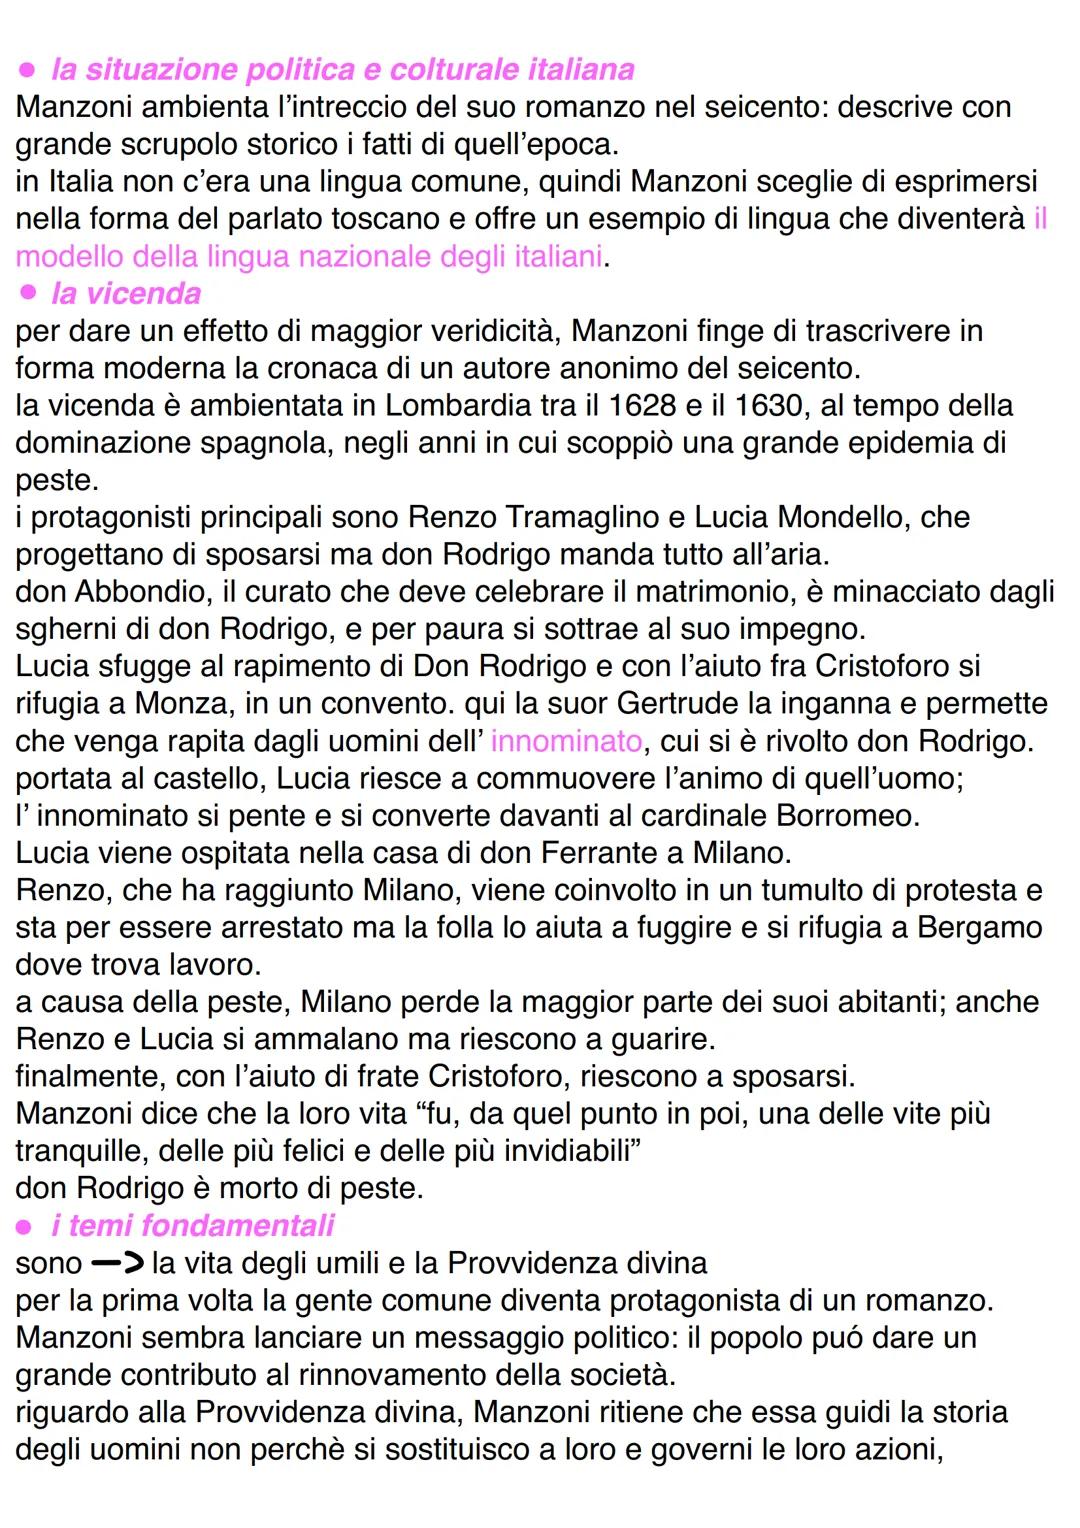 alessandro Manzoni
Alessandro Manzoni nacque a Milano nel 1785. sua
madre era Giulia Beccaria, figlia di Cesare
Beccaria.
studiò per 16 anni